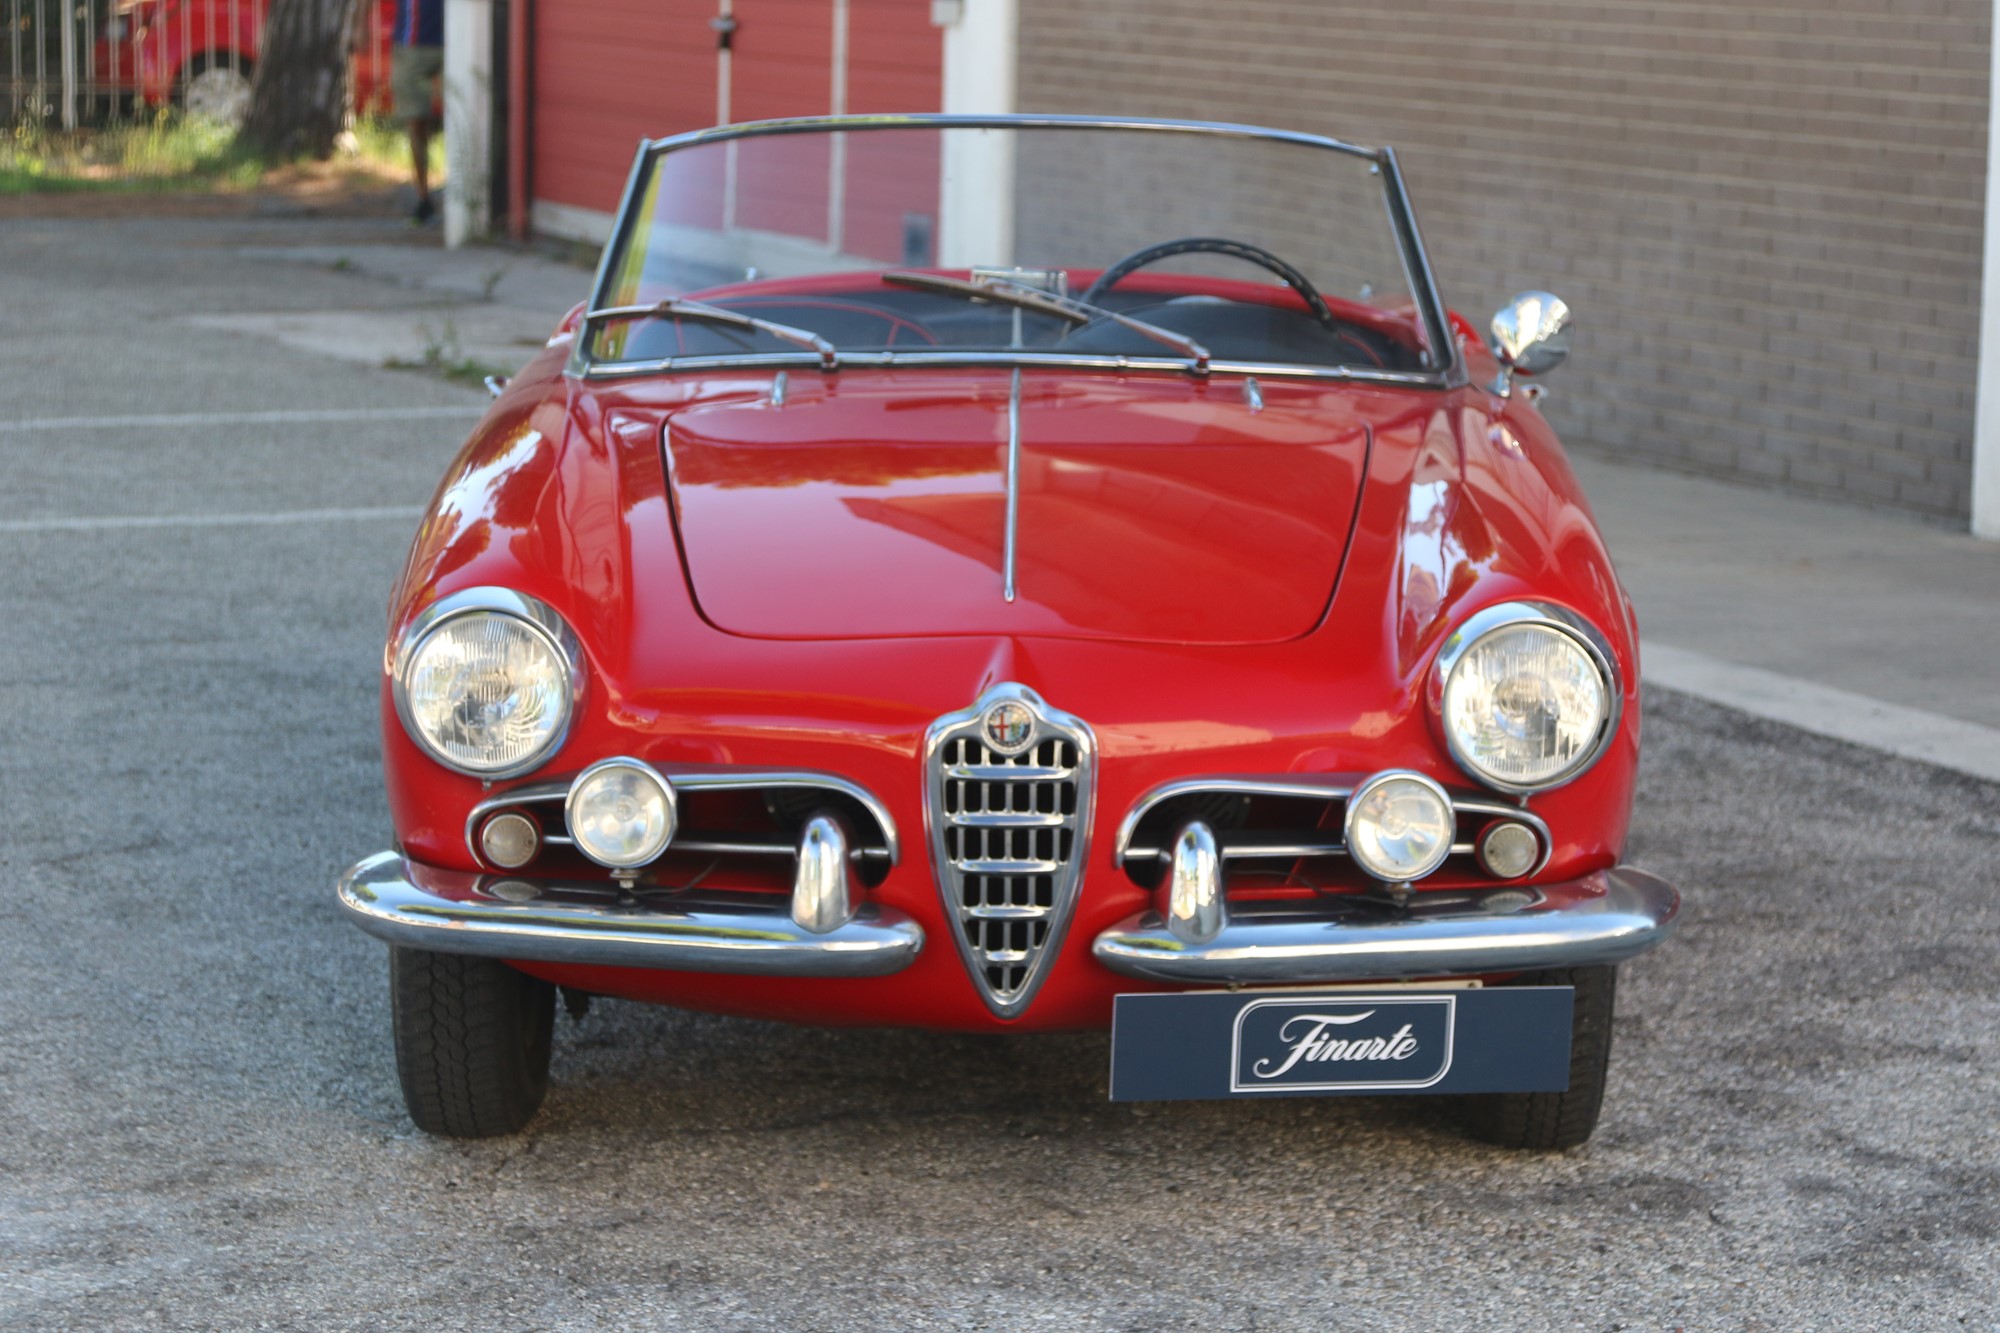 1957 Alfa Romeo Giulietta spider veloce (Pinin Farina) - Image 2 of 15